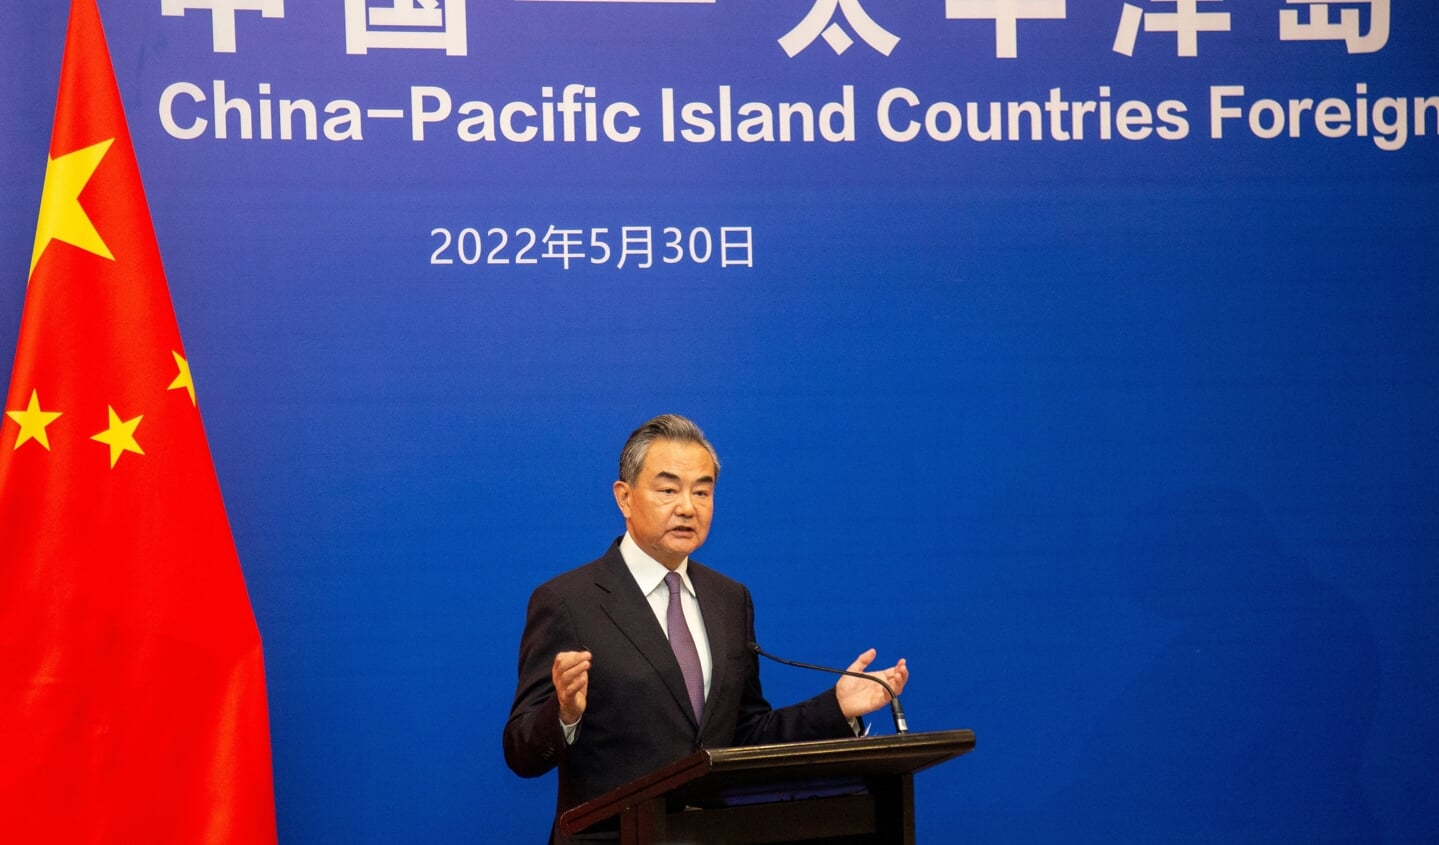 De Chinese minister van Buitenlandse Zaken Wang Yi wist tijdens de afsluiting van zijn rondreis langs eilandstaten in de Pacific geen akkoord te bereiken over een 'Gemeenschappelijke Ontwikkeling Visie'. Die zou China economische, culturele en ook de veilighidscontrole geven over de eilandstaten.